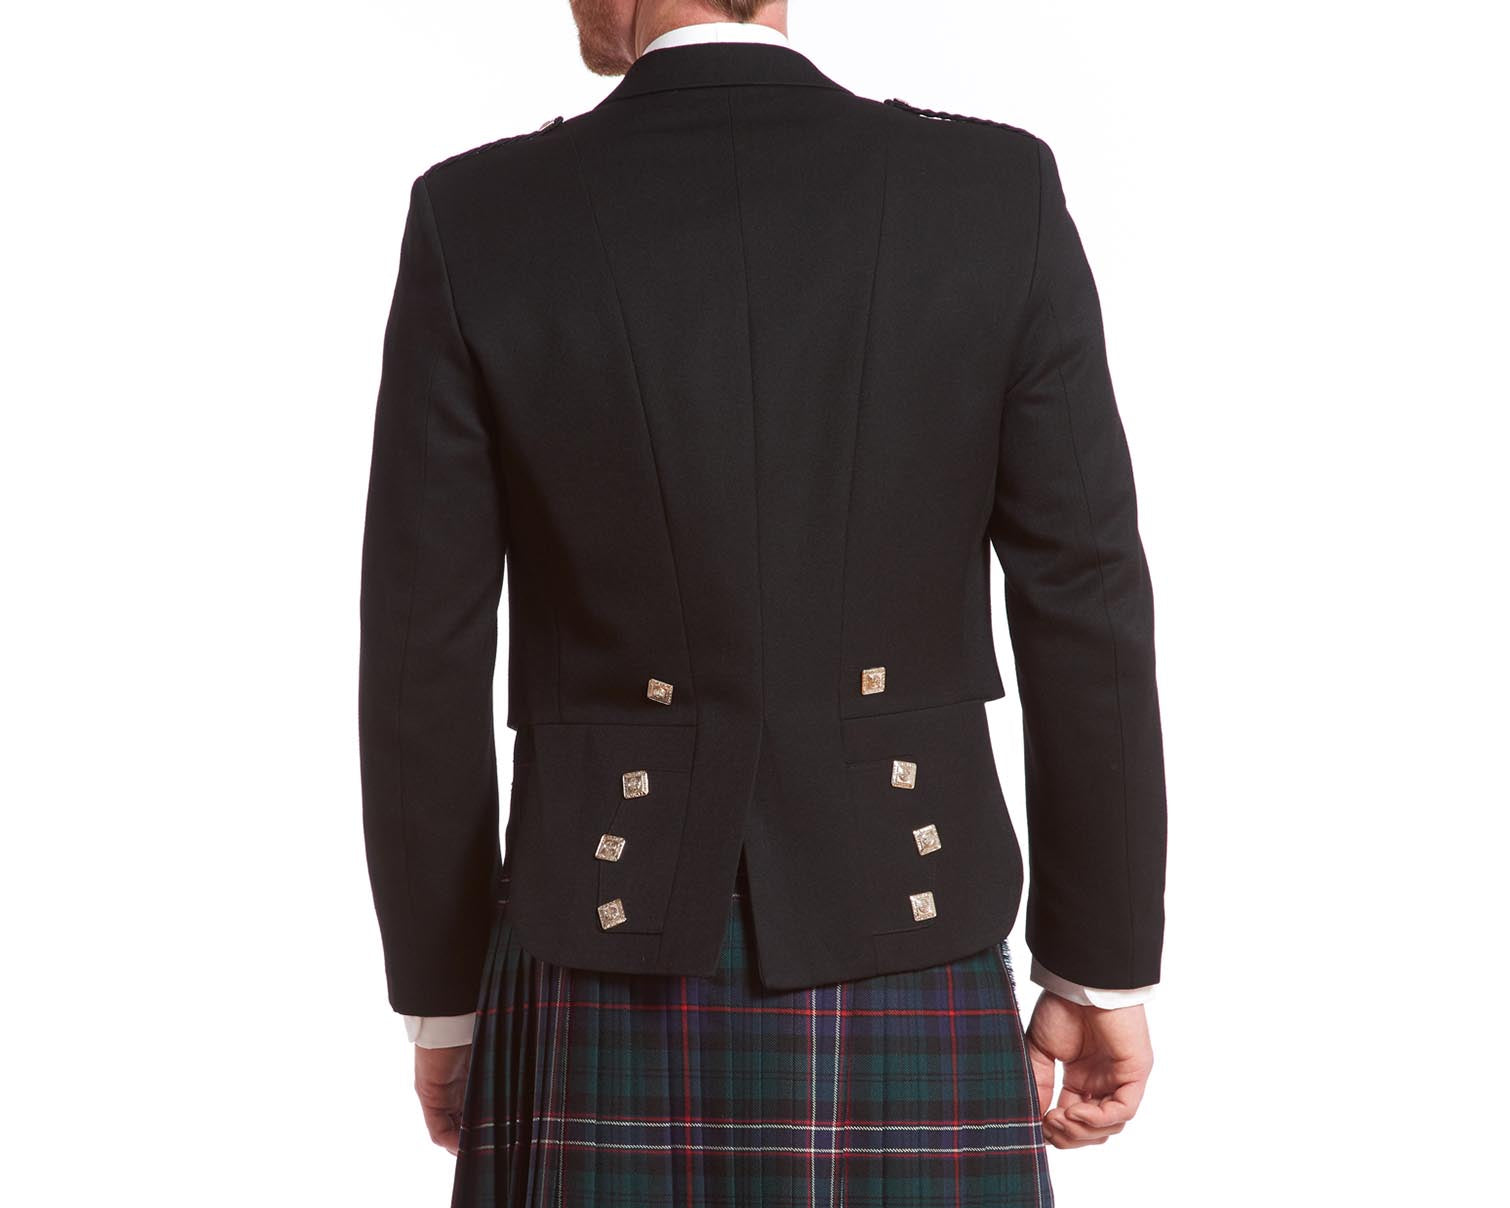 Prince Charlie Rental Jacket & 3-button Vest – The Scottish Company